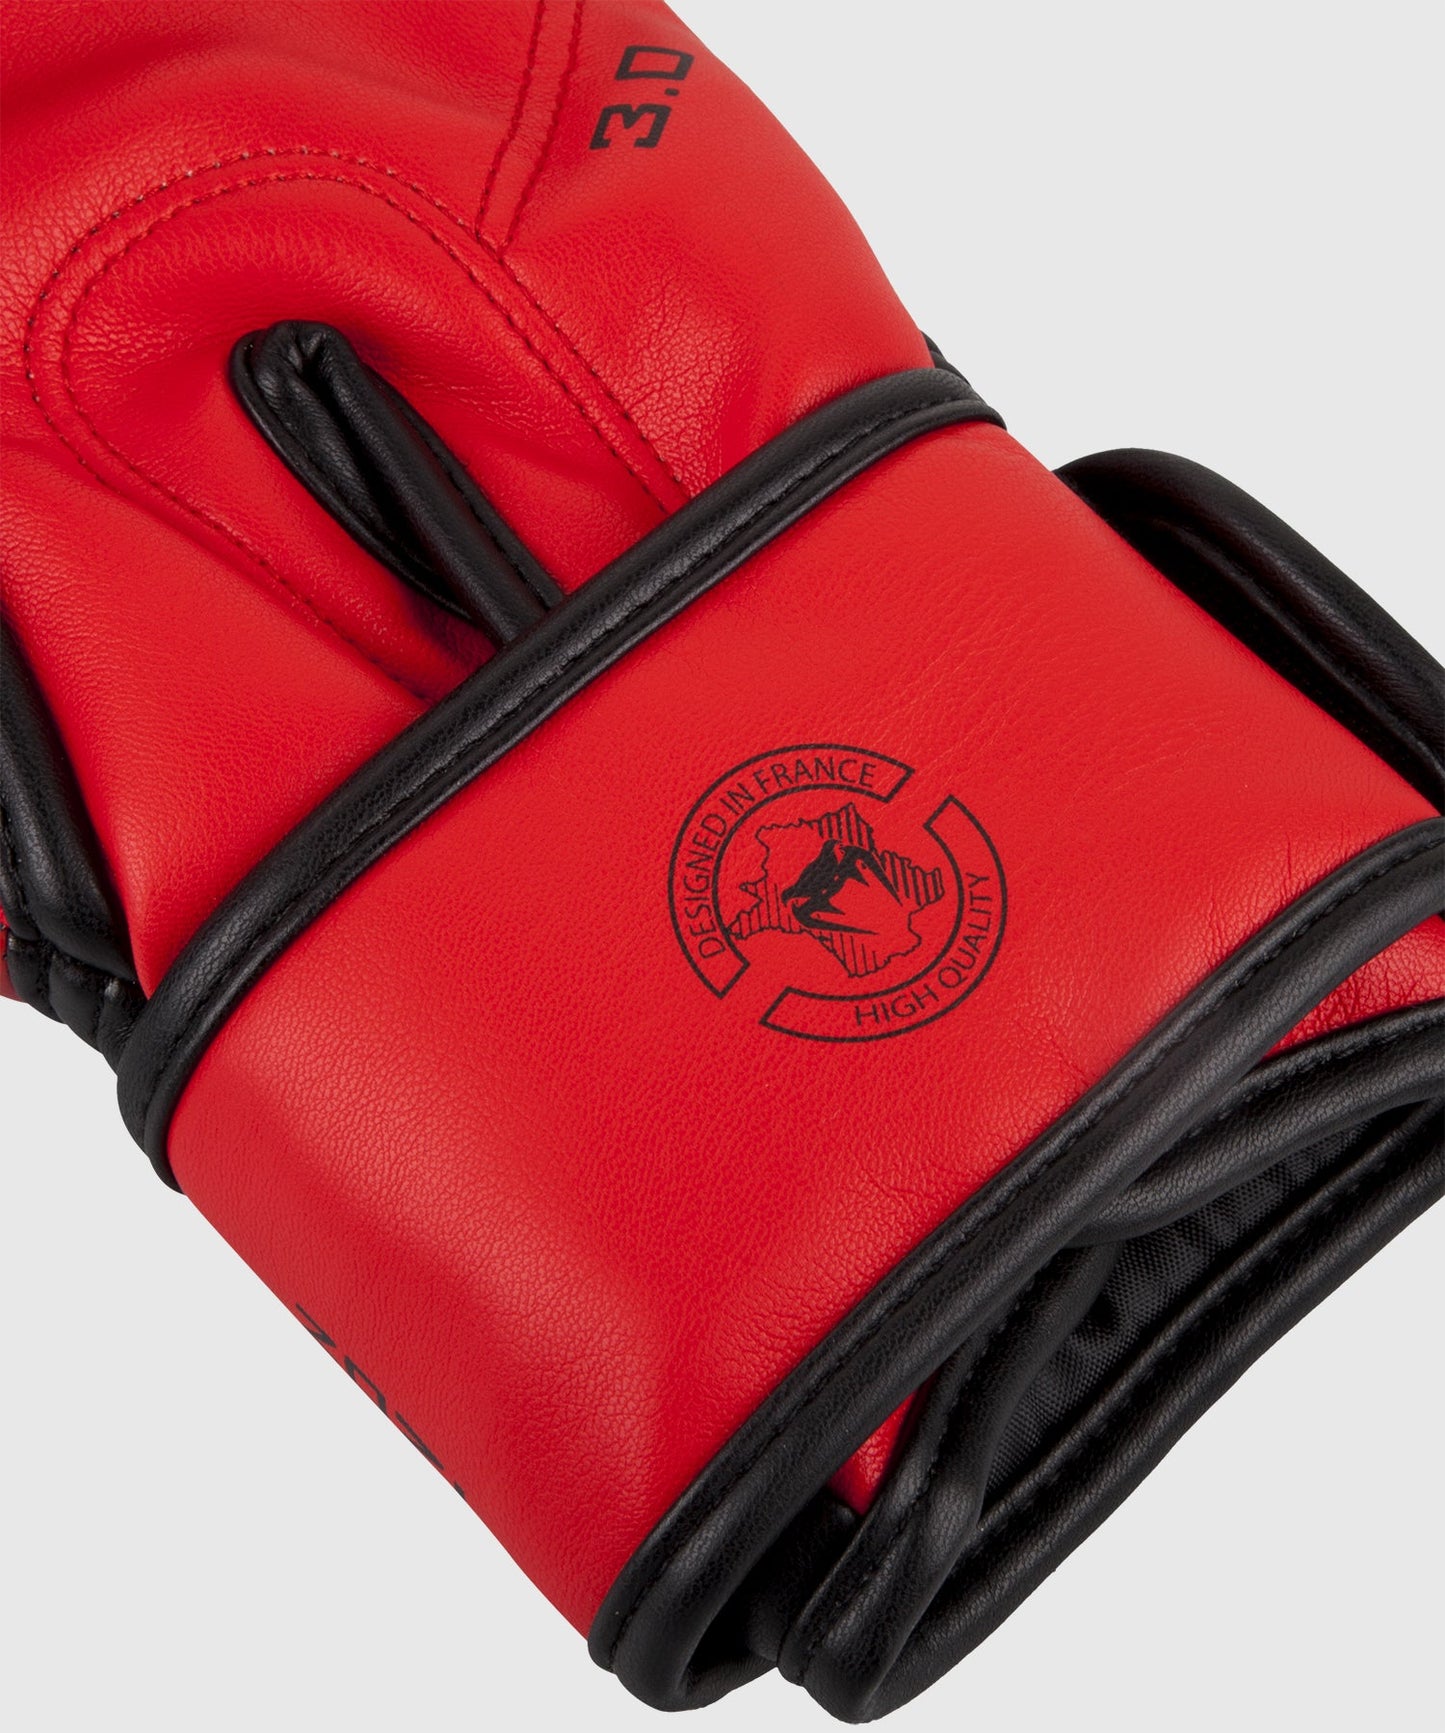 Gants de boxe Venum Challenger 3.0 avec poignet ajustable par velcro